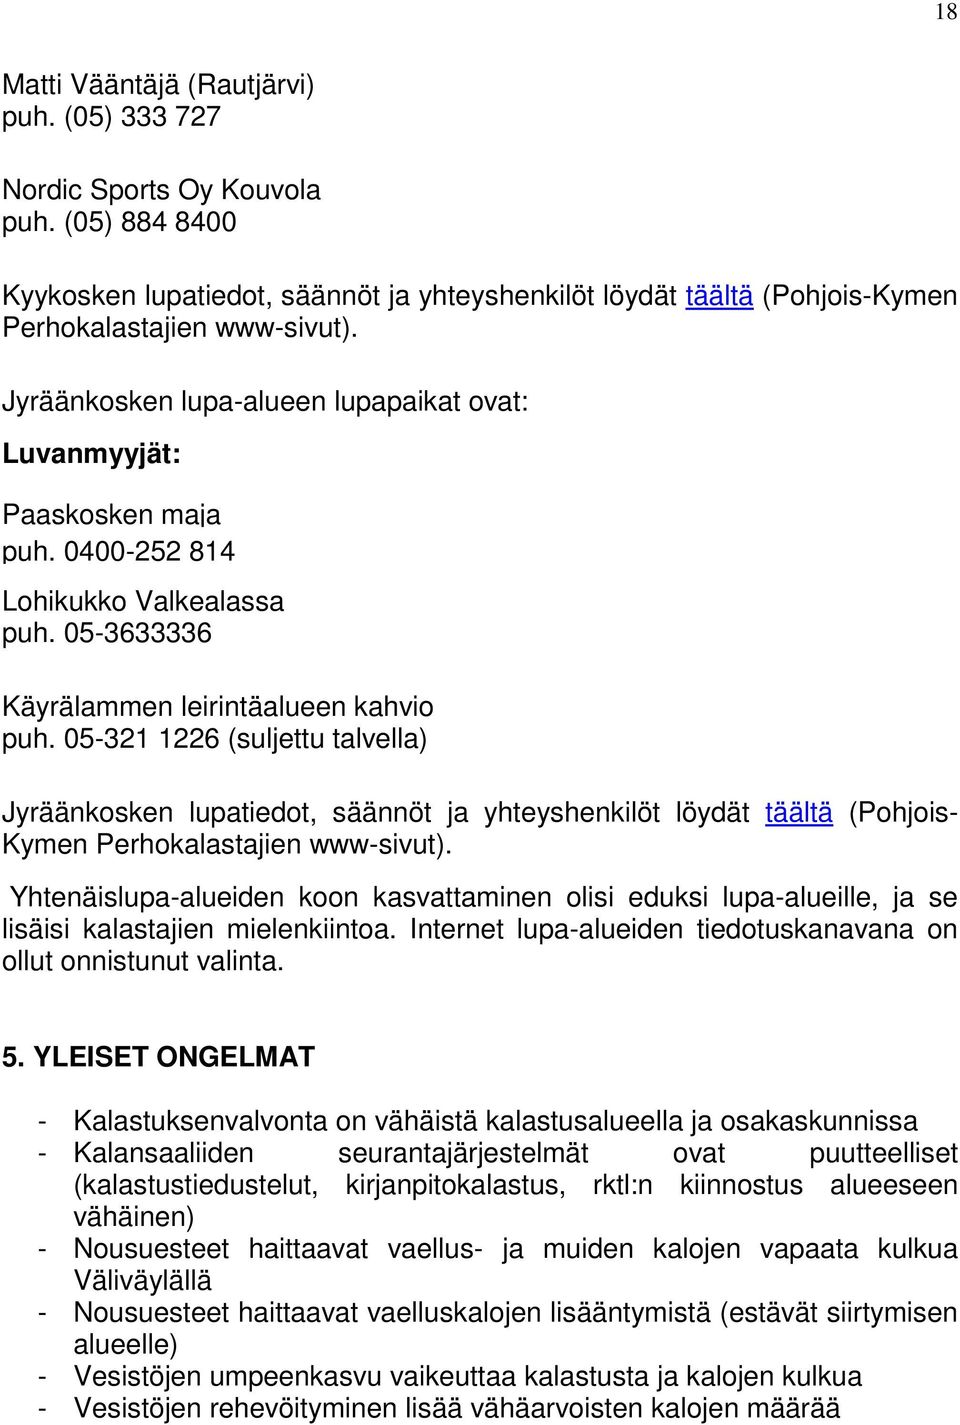 05-321 1226 (suljettu talvella) Jyräänkosken lupatiedot, säännöt ja yhteyshenkilöt löydät täältä (Pohjois- Kymen Perhokalastajien www-sivut).